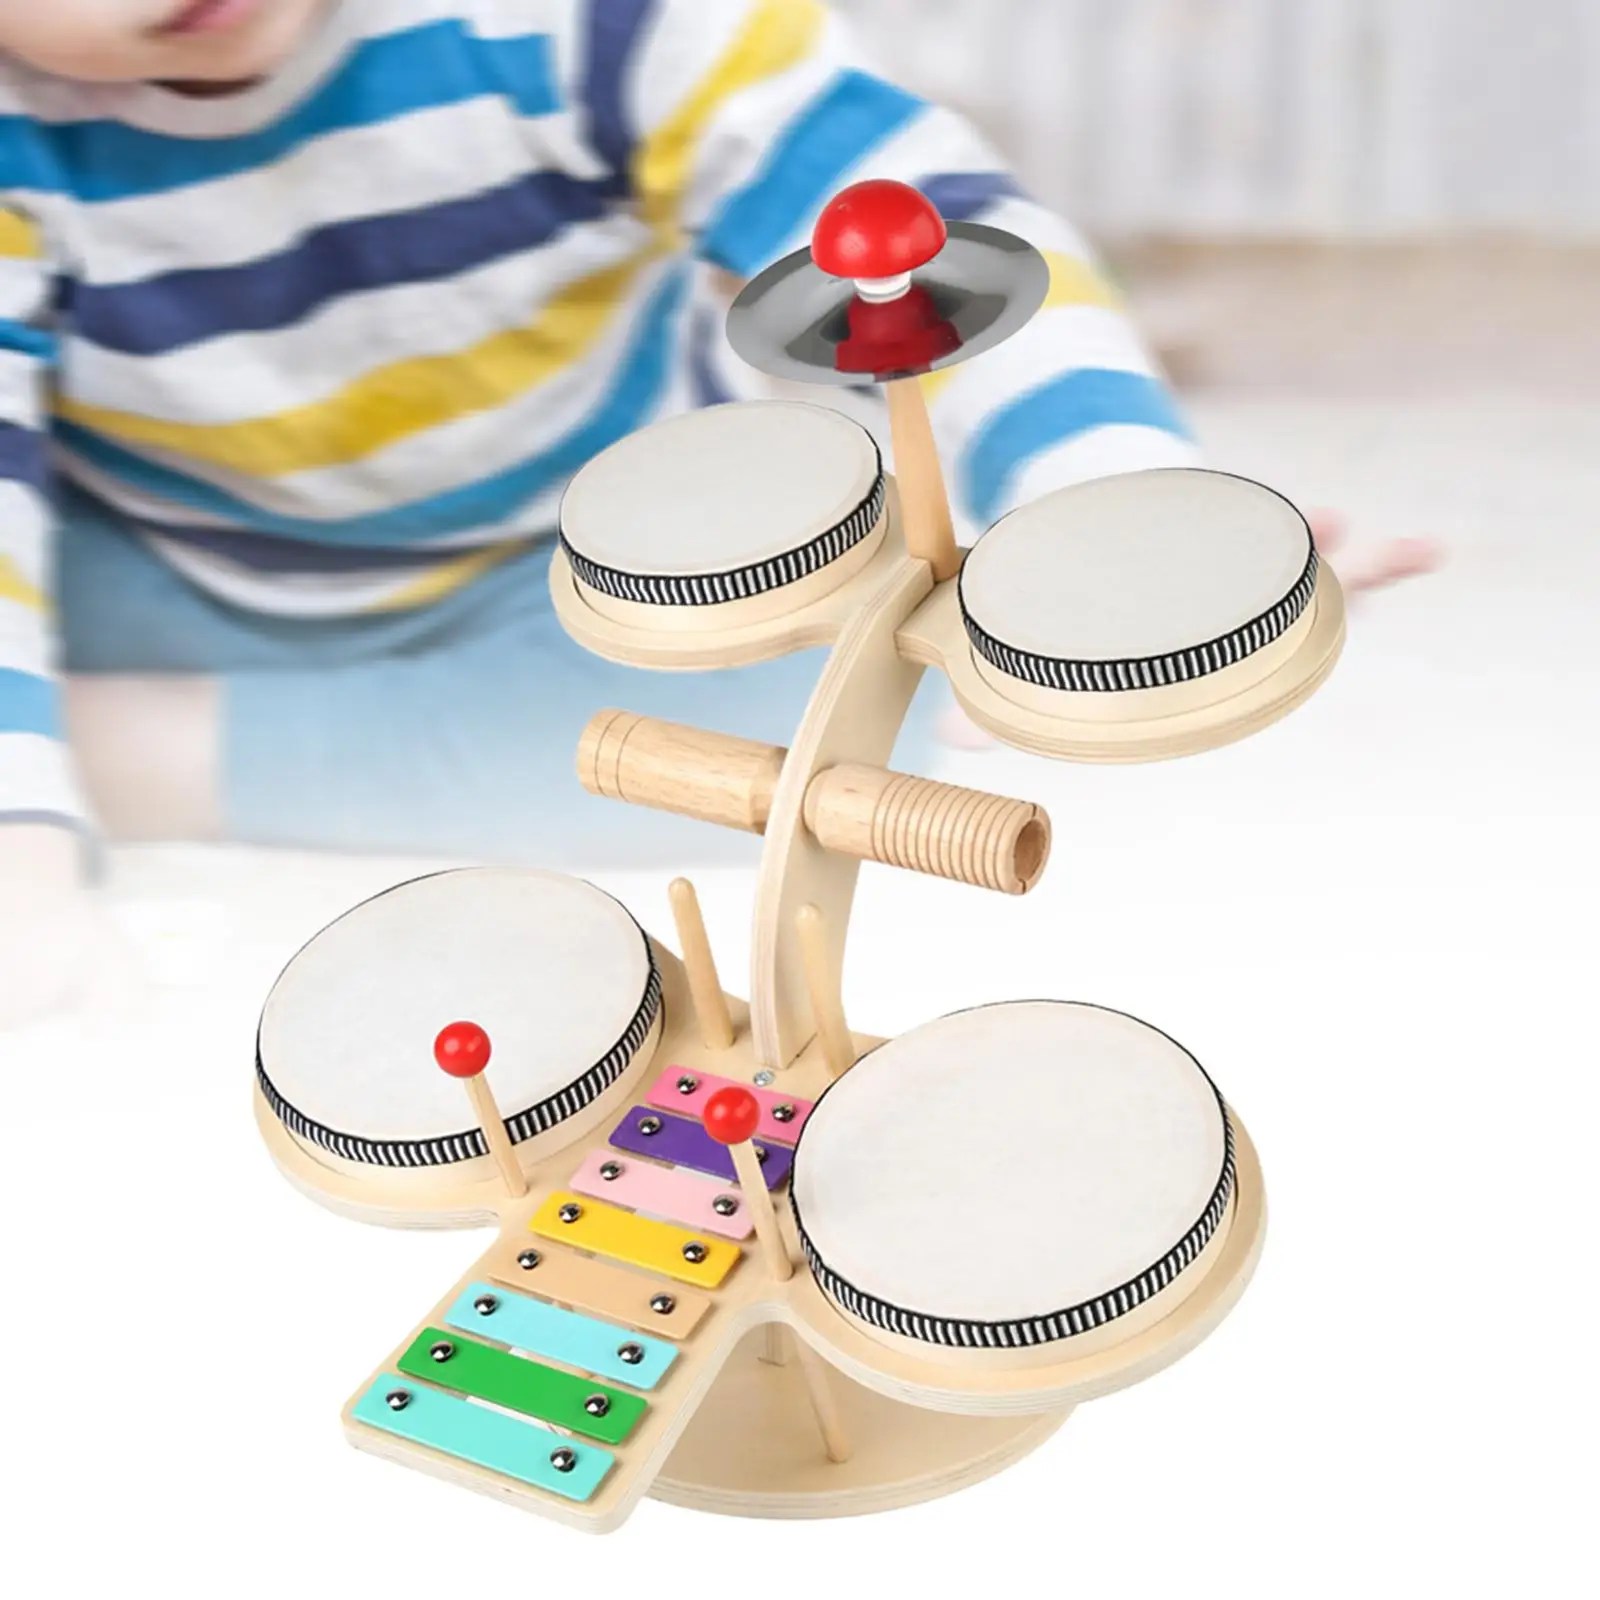 

Детский барабанный набор, ударные деревянные детские игрушки, творческий набор музыкальных инструментов Монтессори, наборы барабанов для дошкольников, ксилофон